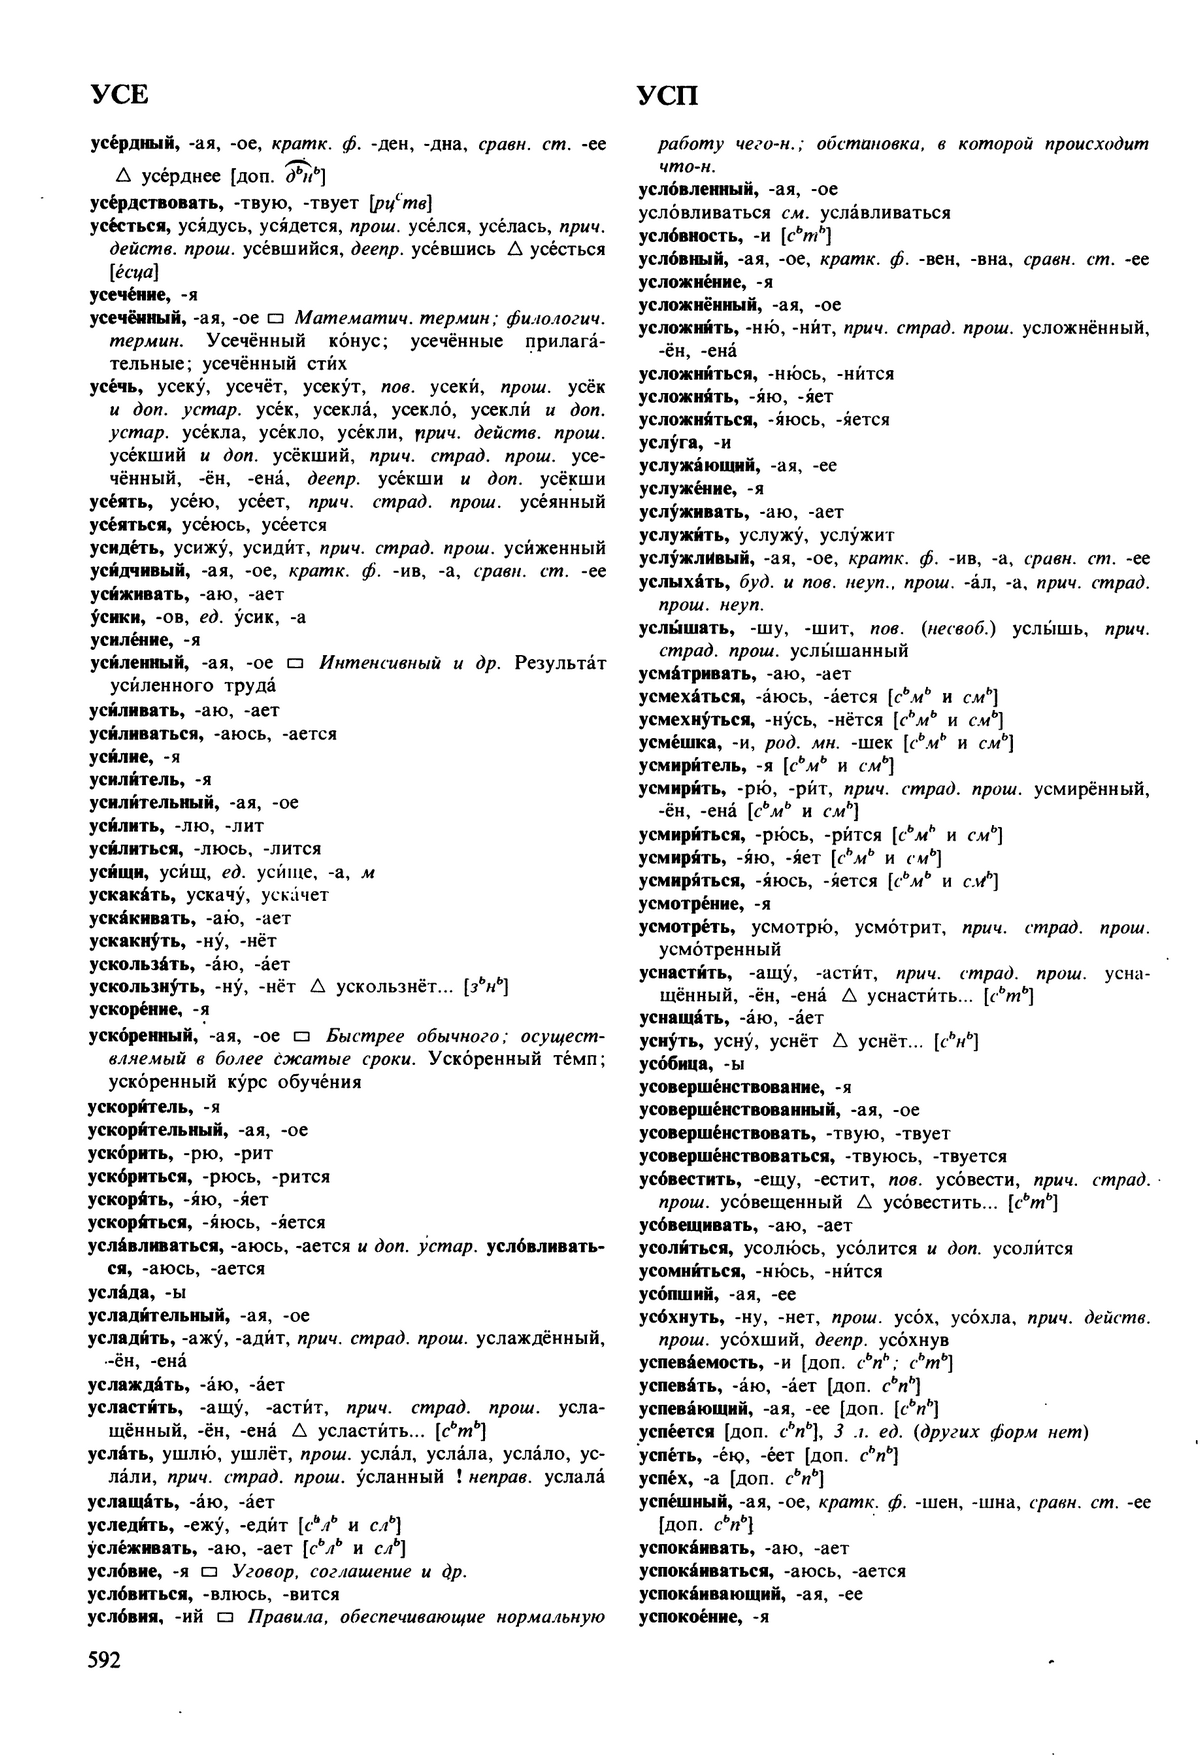 Фотокопия pdf / скан страницы 592 орфоэпического словаря под редакцией Аванесова (5 издание, 1989 год)